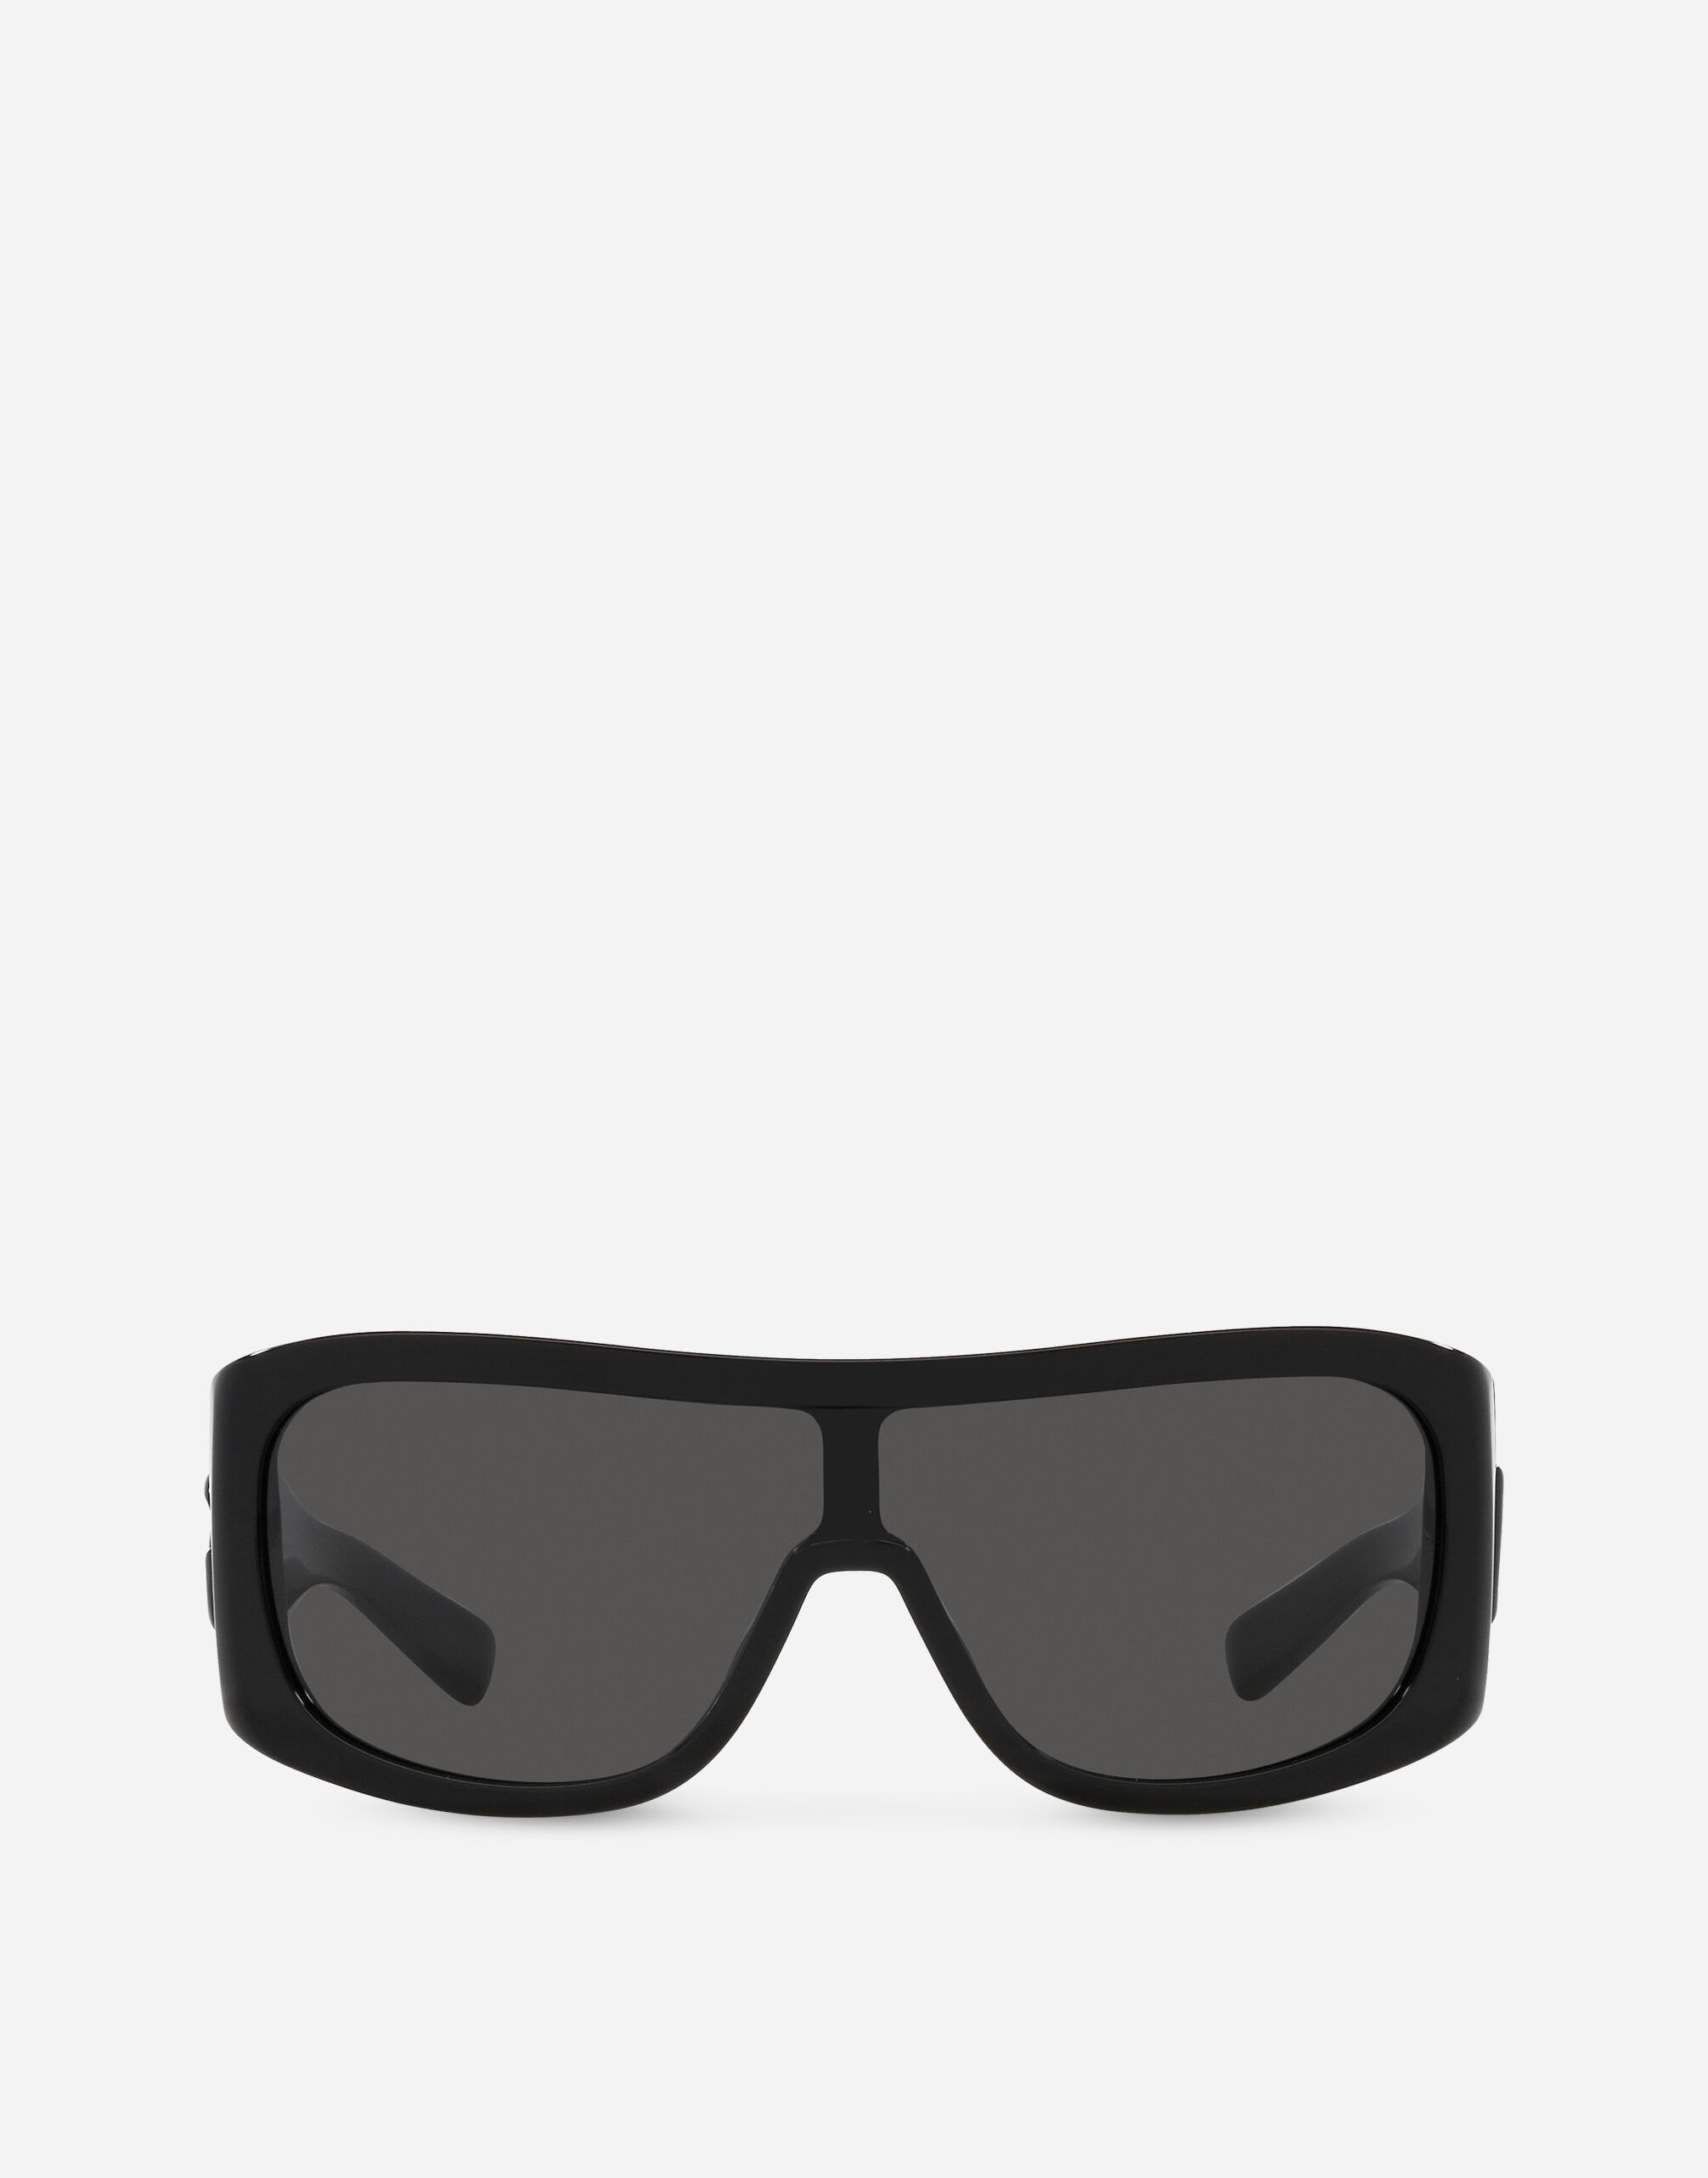 Dolce & Gabbana DG crossed sunglasses Black VG4467VP187